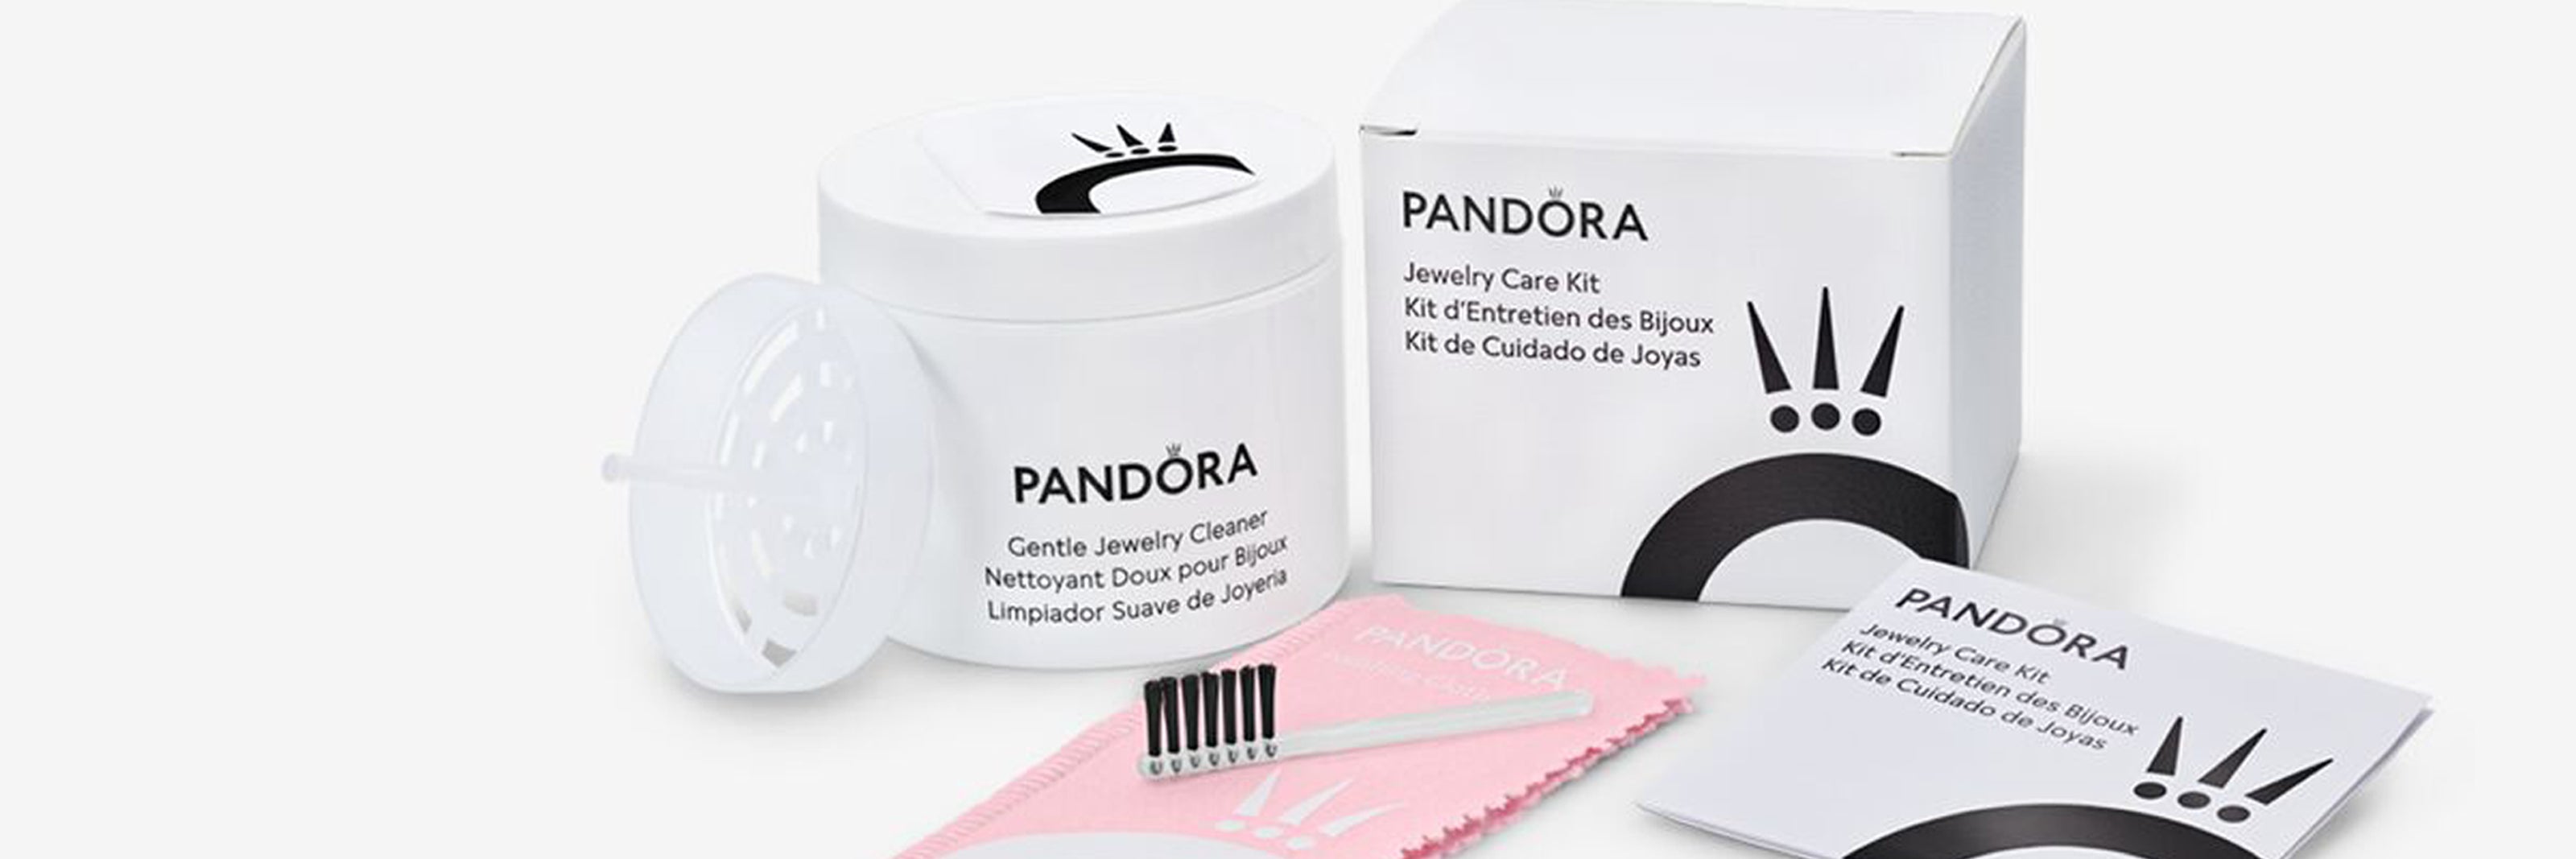 PANDORA CLEANING KIT  Pandora cleaning kit, Cleaning kit, Pandora